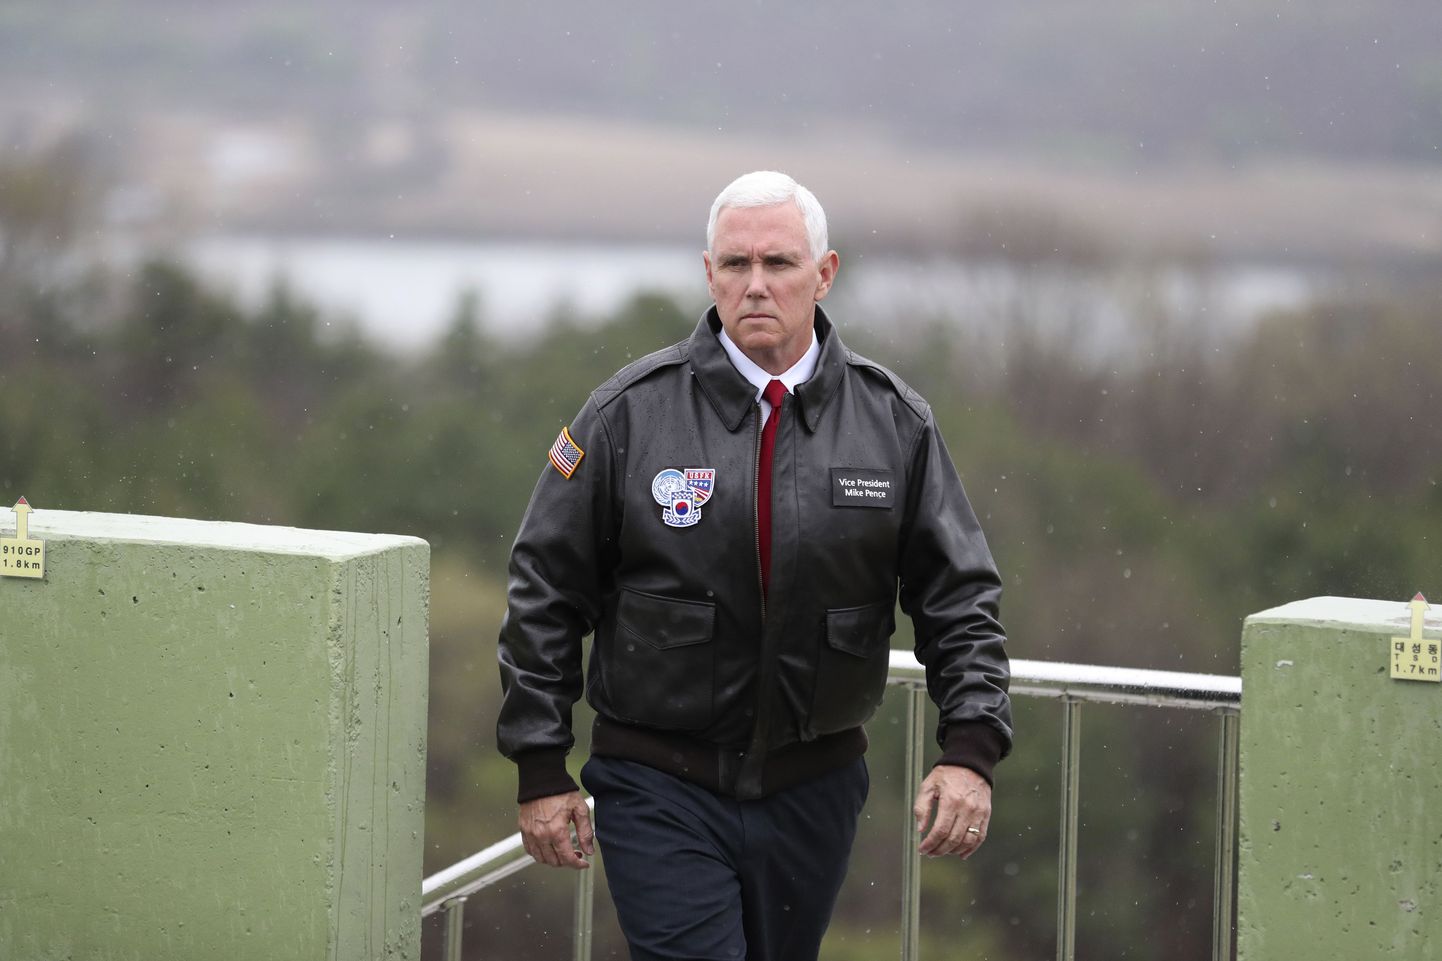 USA asepresident Mike Pence külastab kahe Korea piirialal asuvat demilitariseeritud tsooni